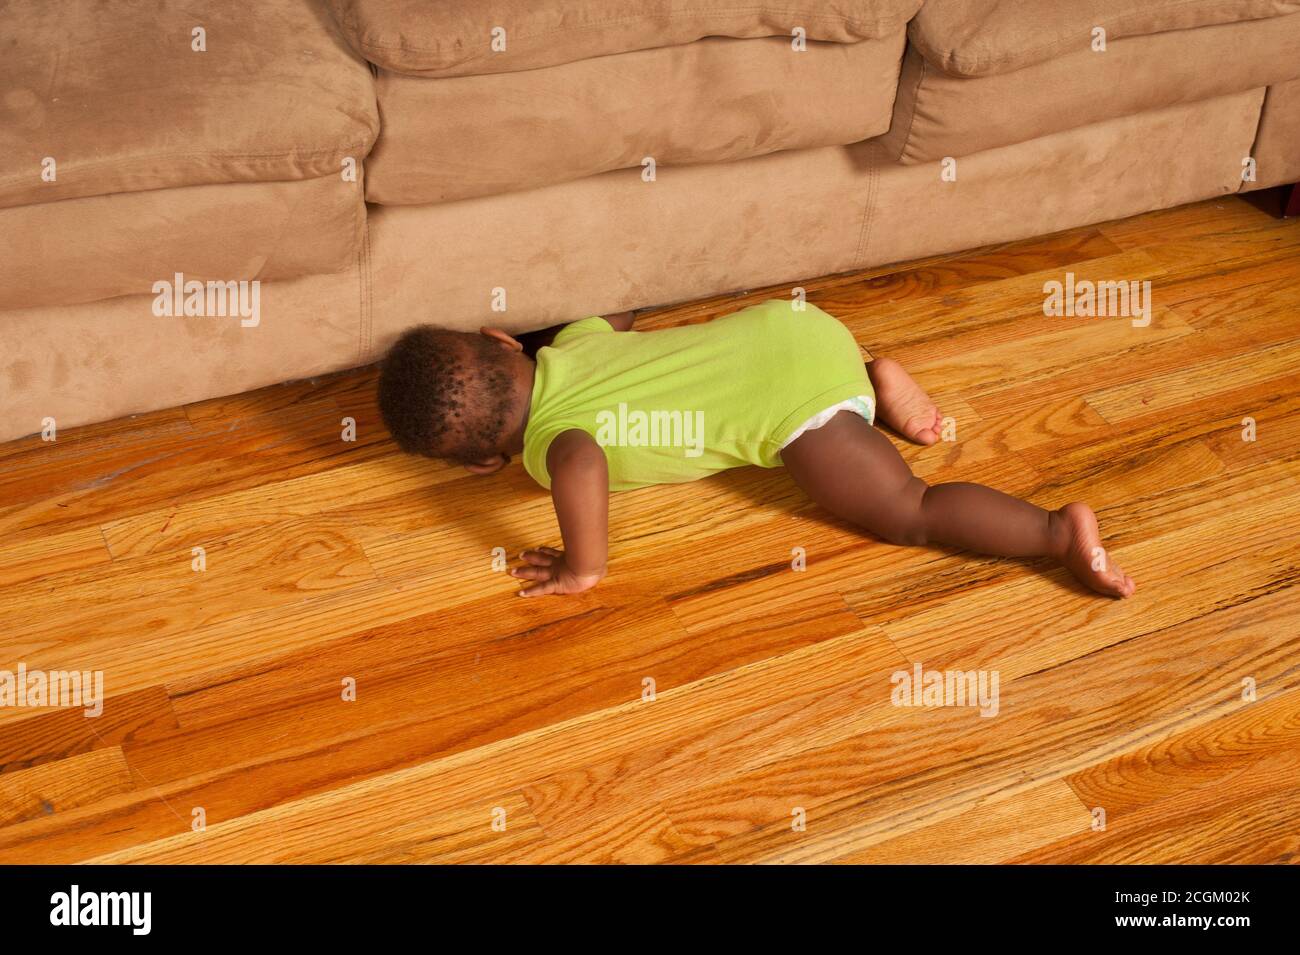 bambino di 12 mesi sullo stomaco in cerca di giocattolo che rotolava sotto il divano Foto Stock